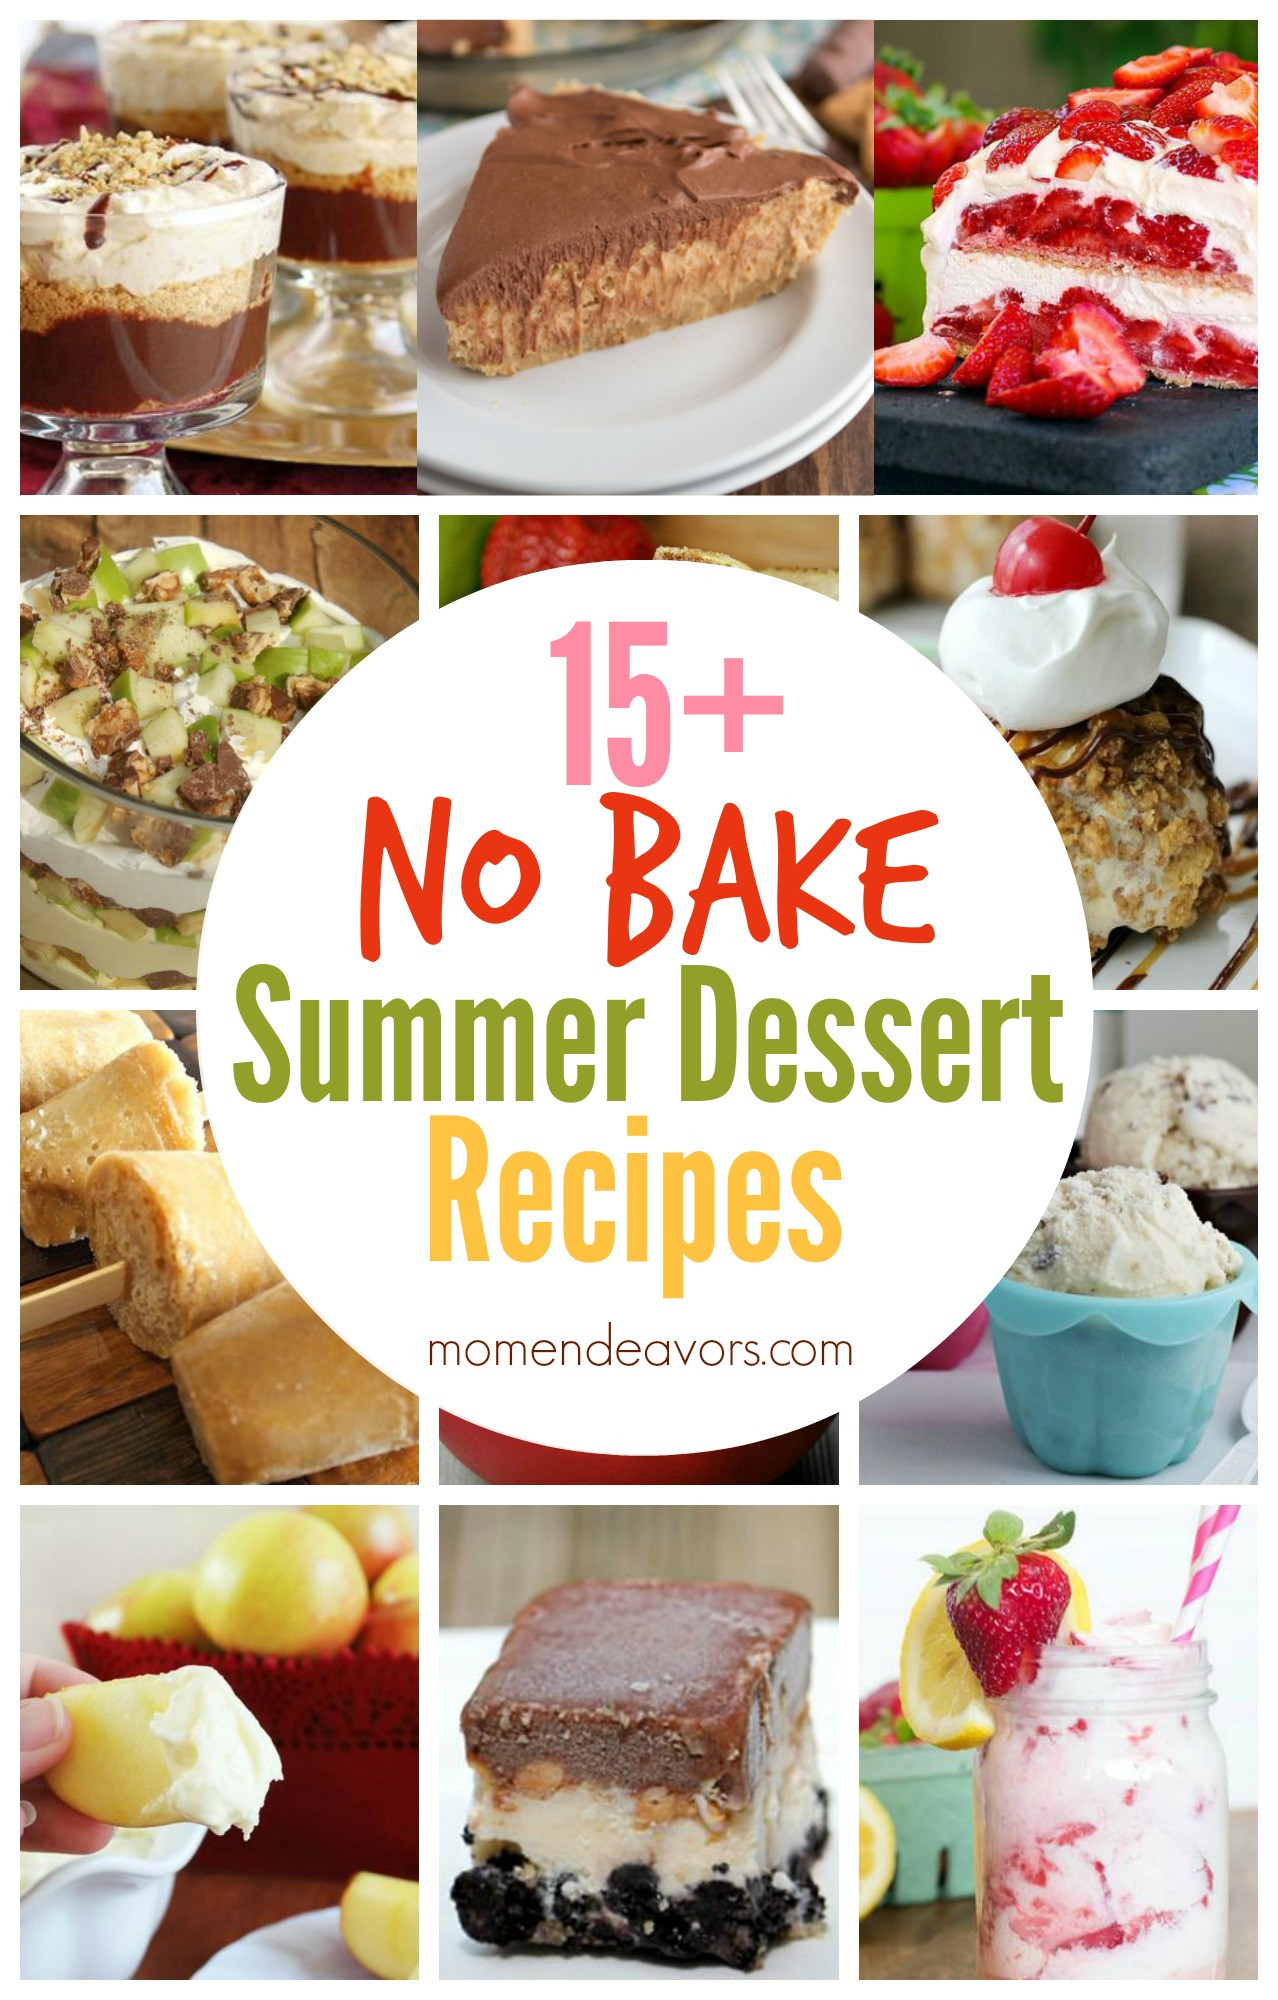 No Bake Summer Desserts
 15 No Bake Summer Dessert Recipes